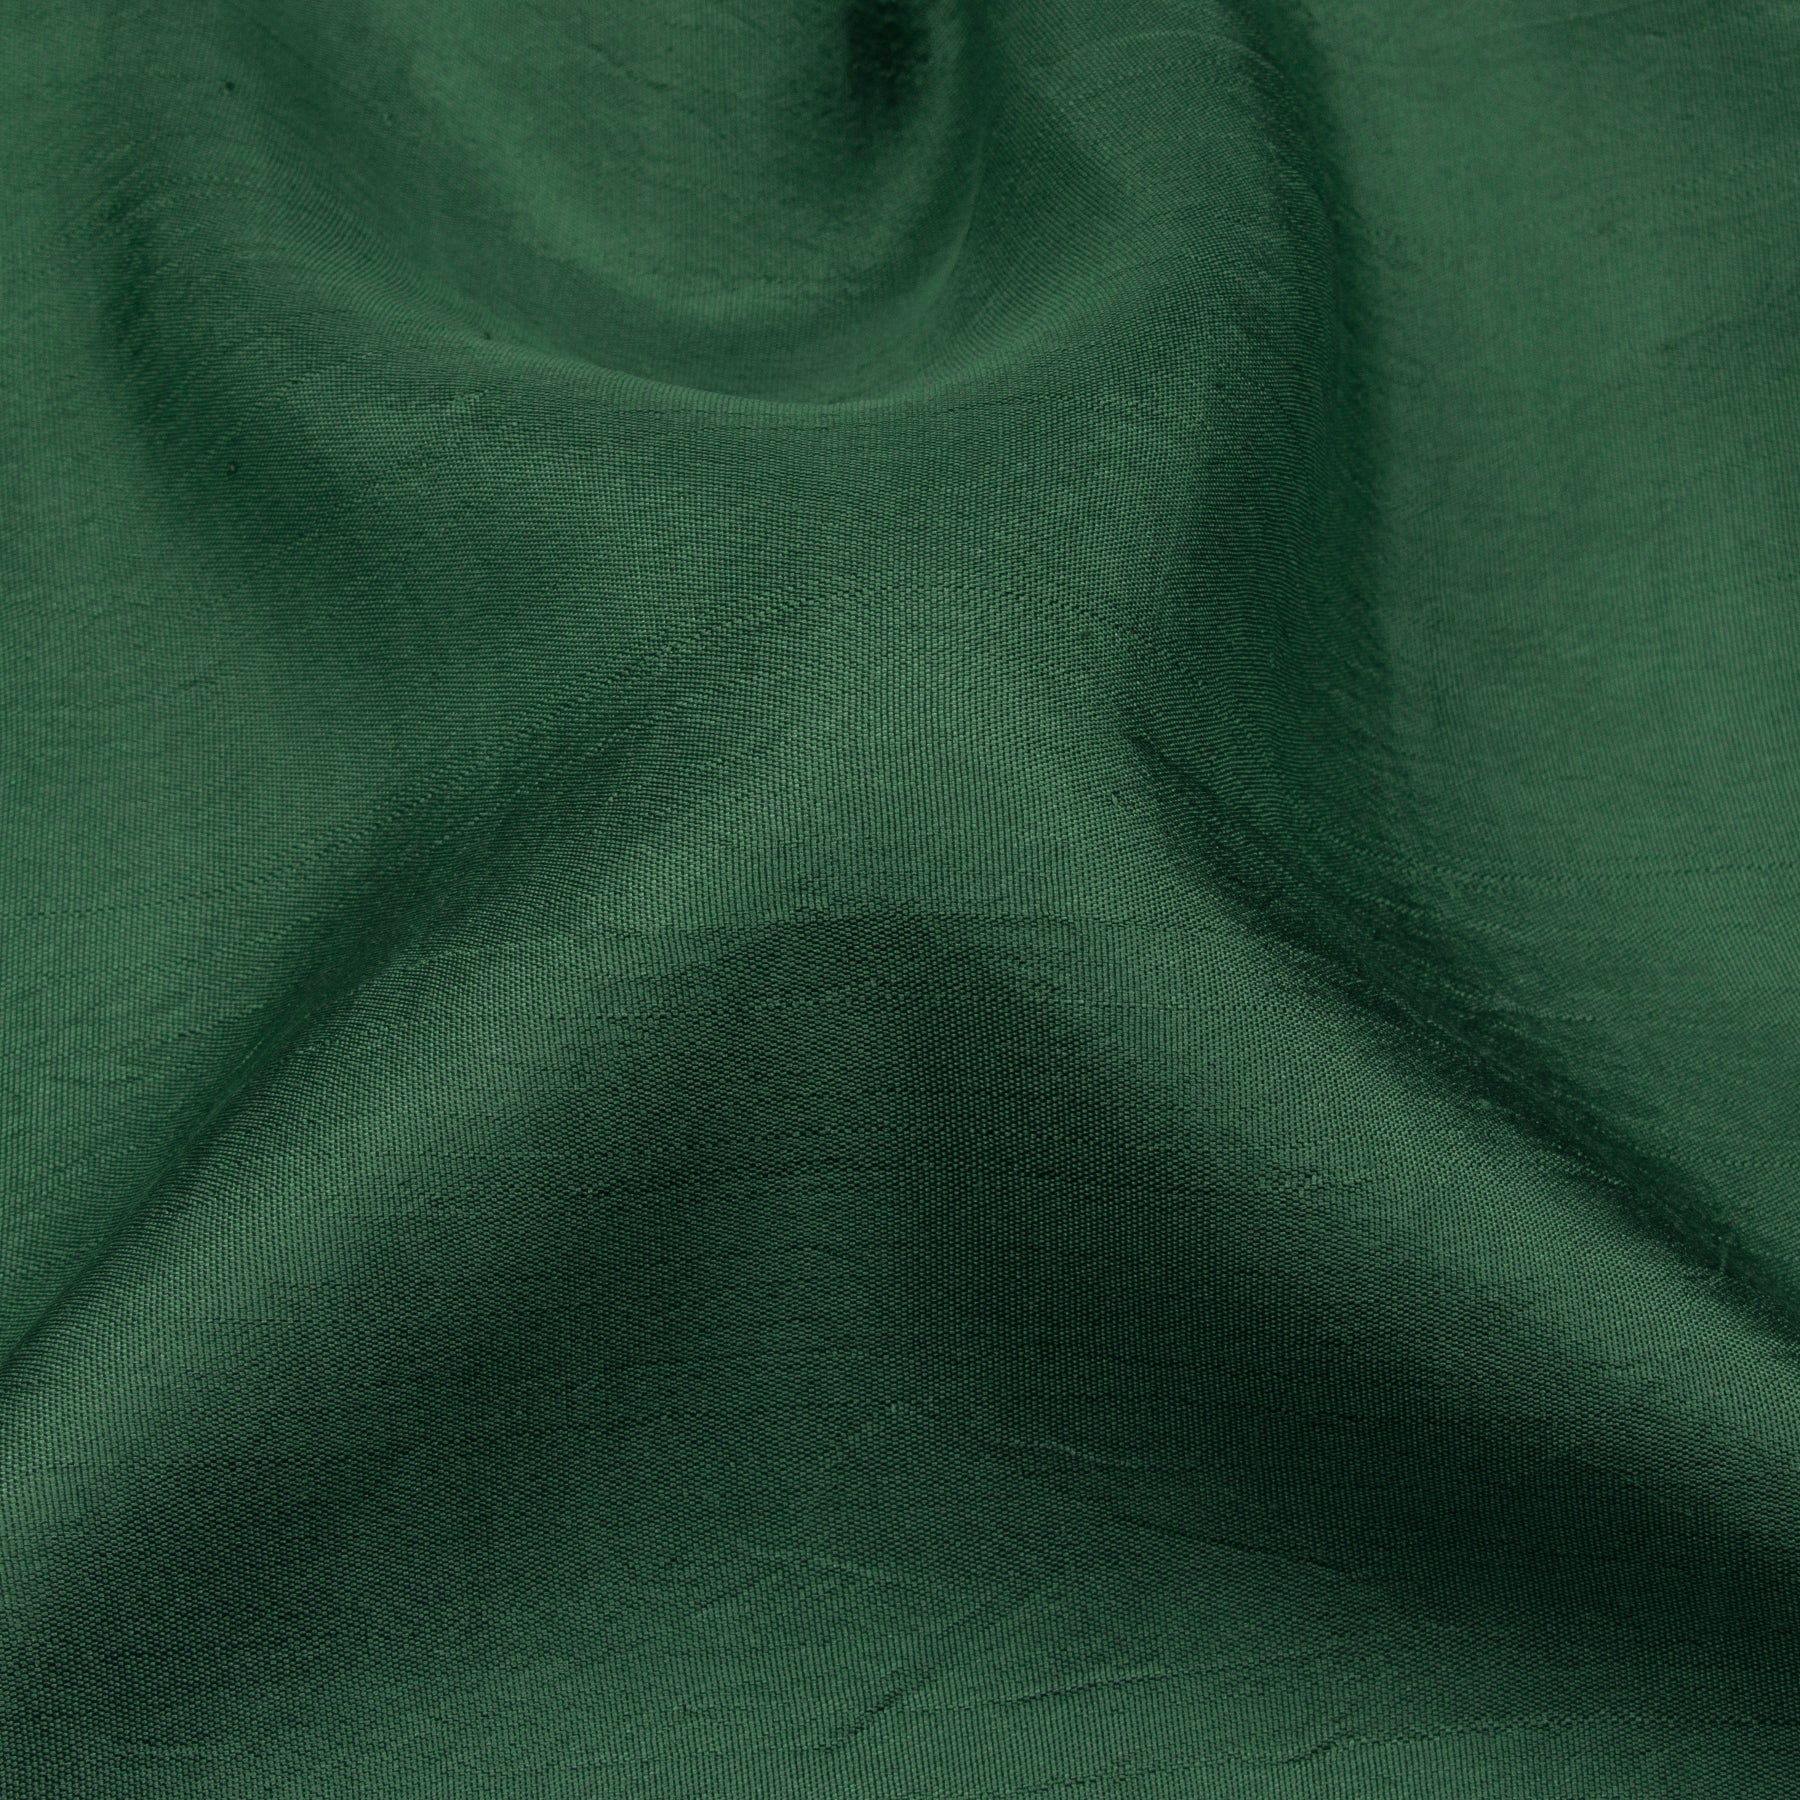 Kanakavalli Kanjivaram Silk Sari 22-040-HS001-06251 - Fabric View